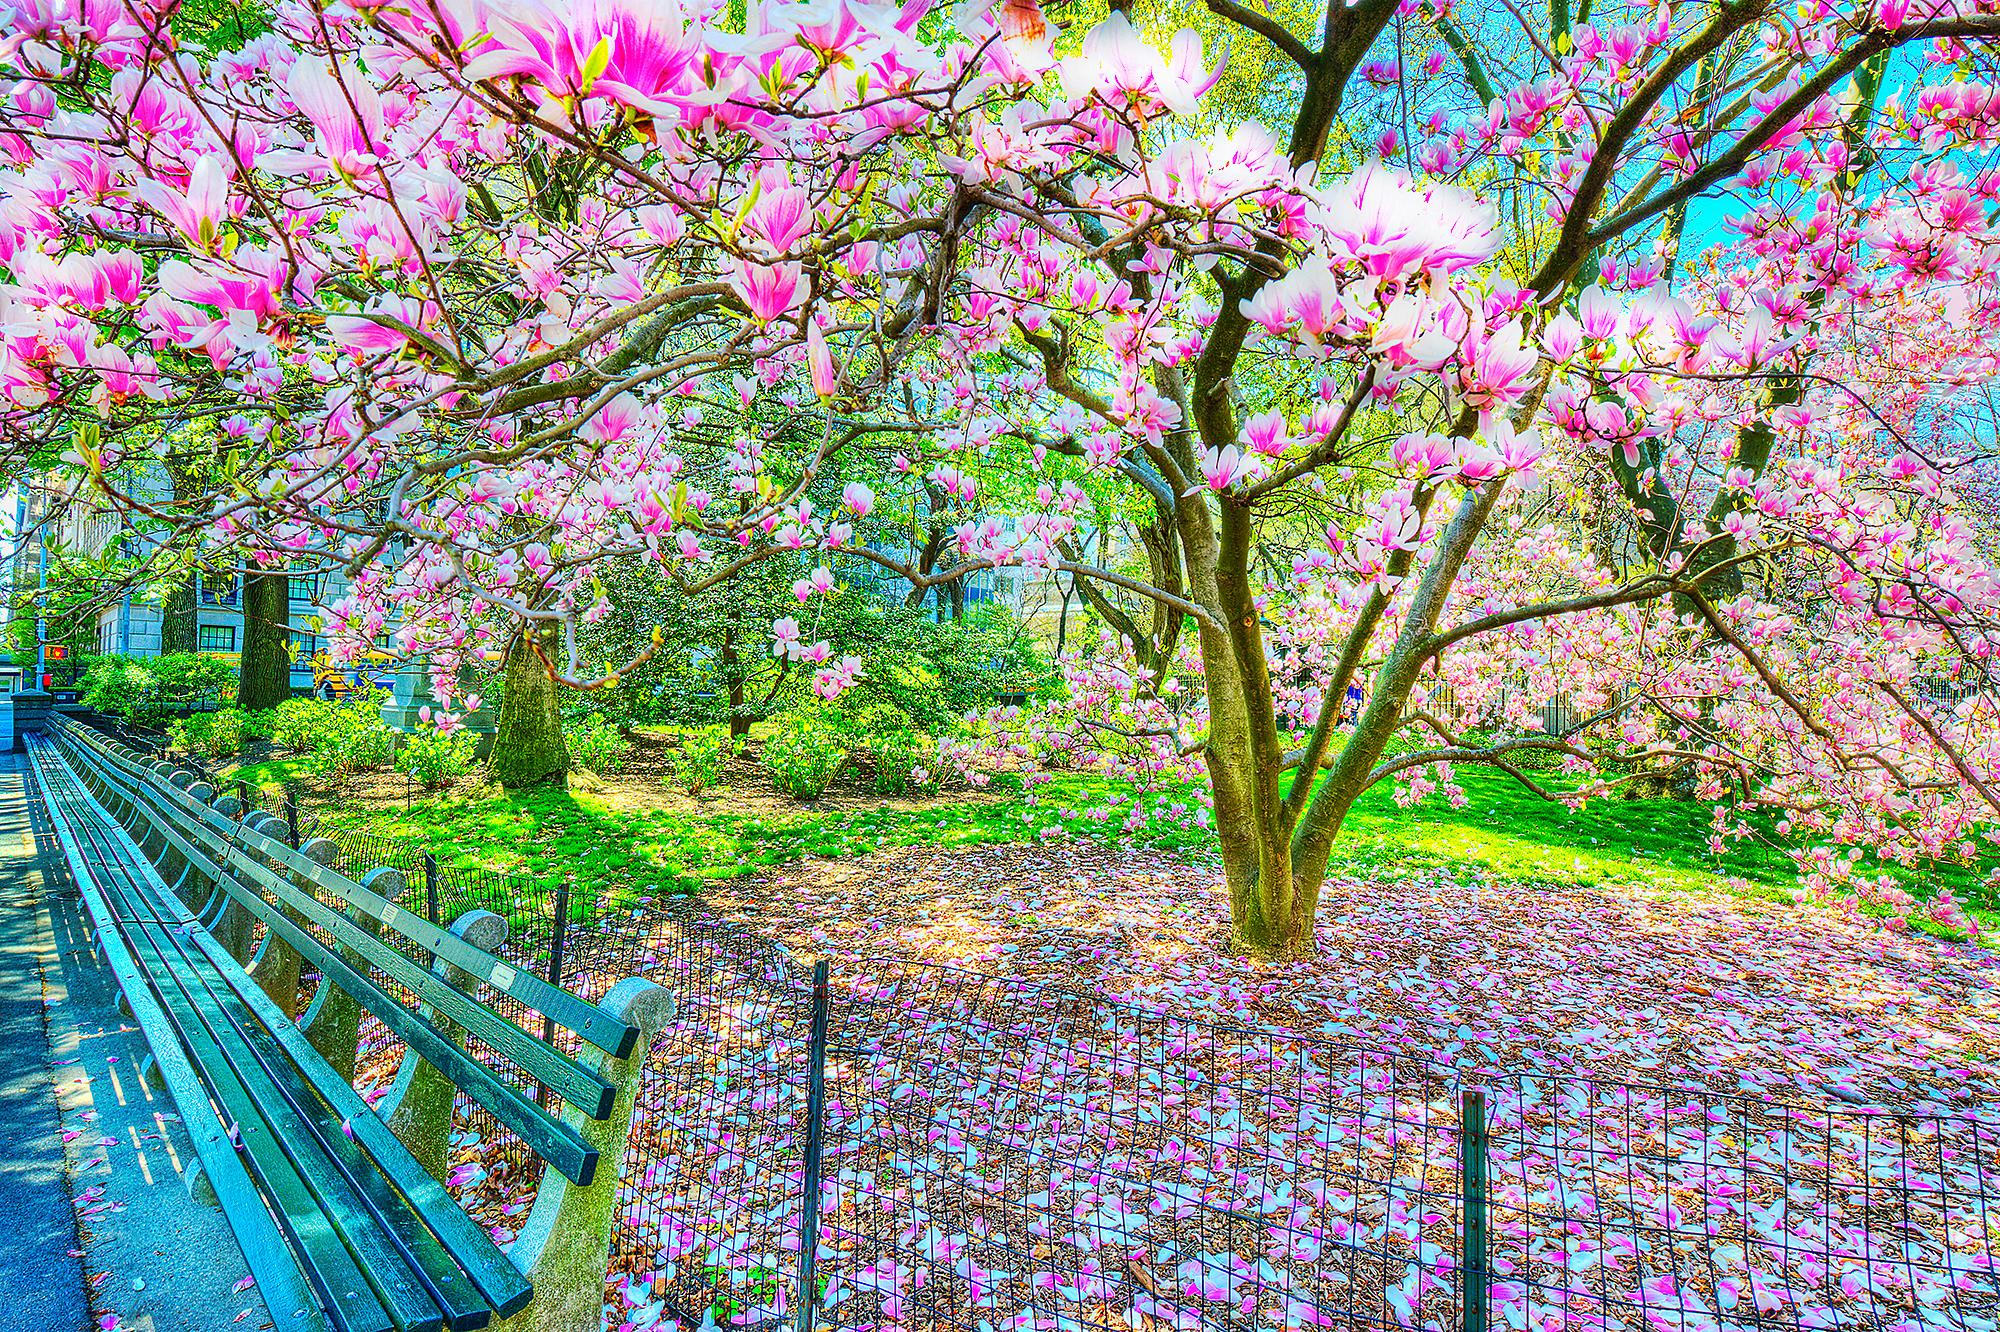 Landscape Photograph Mitchell Funk - L'arbre en fleurs de Magnolia au printemps, Central Park  New York City en roses et bleus